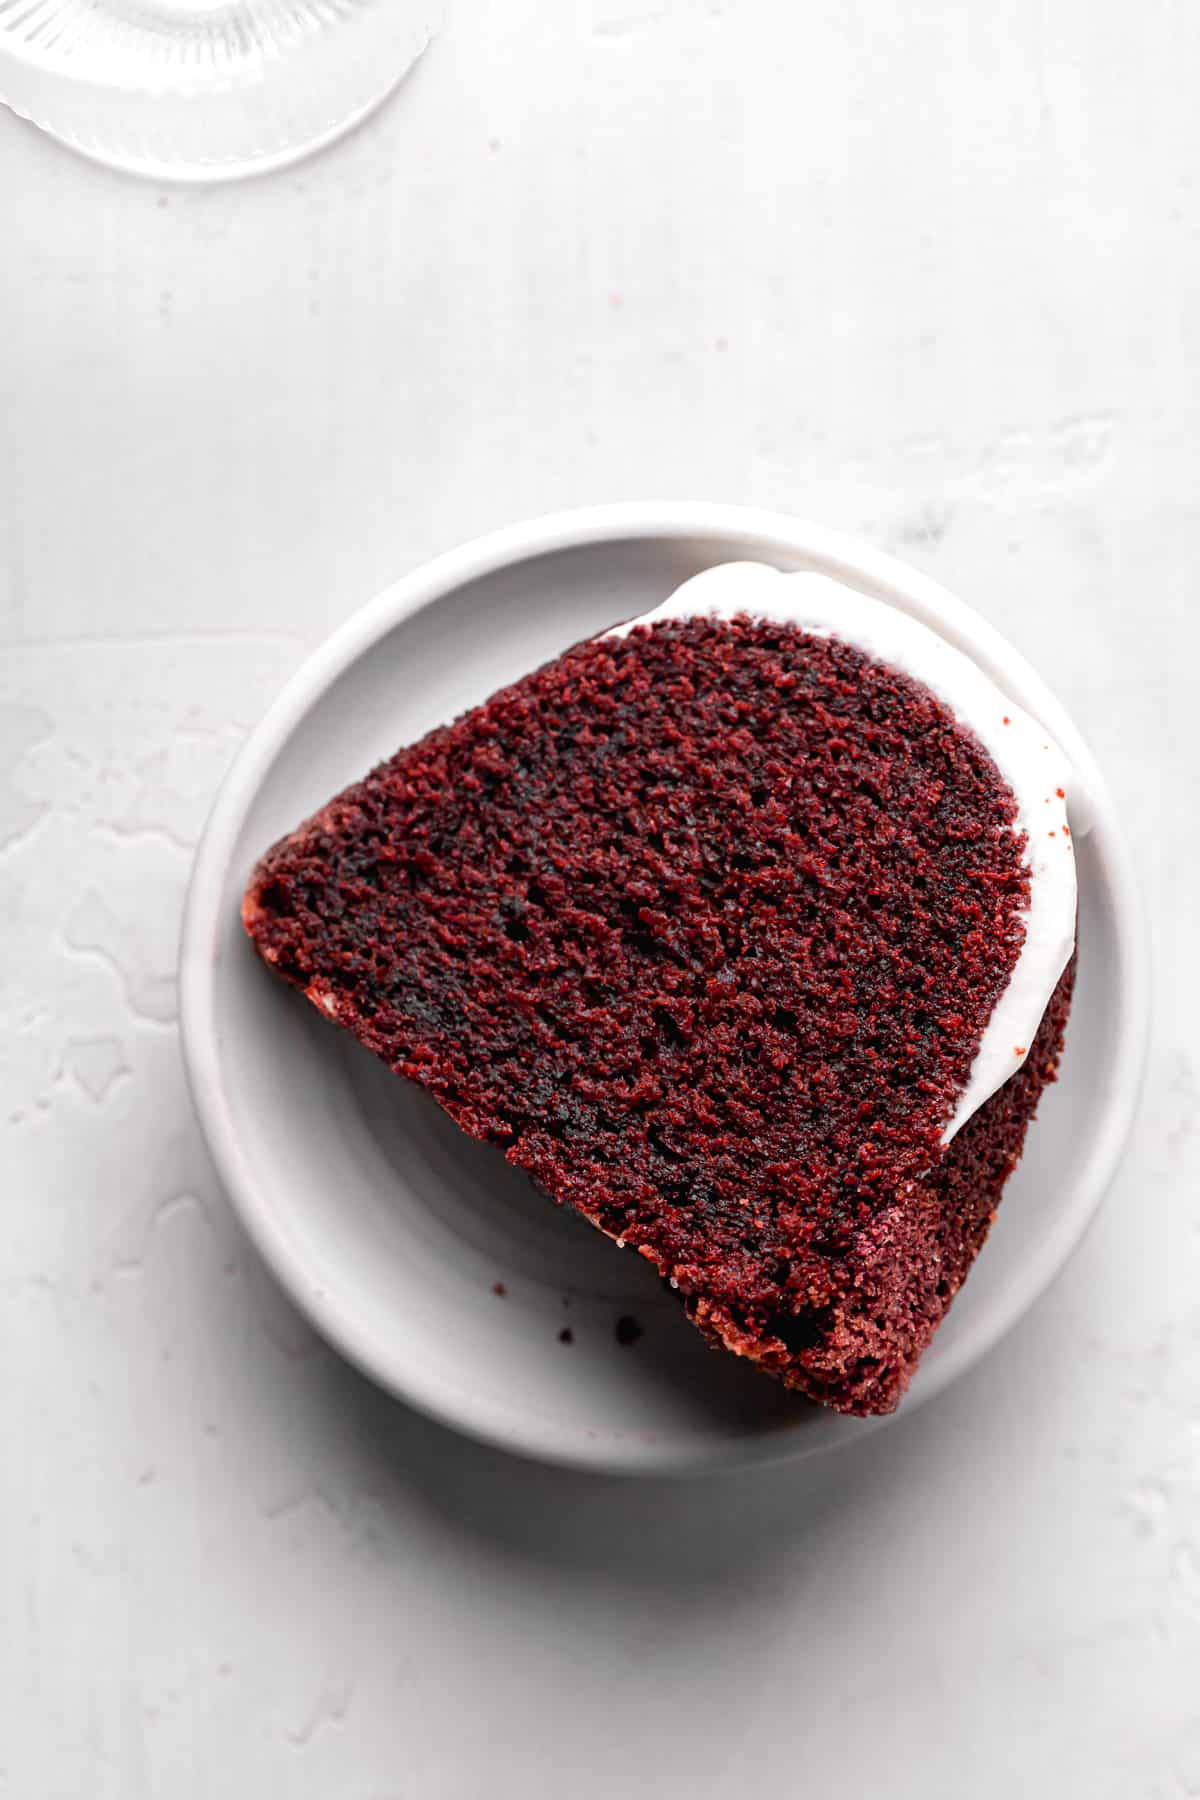 red velvet bundt cake slice on white plate.